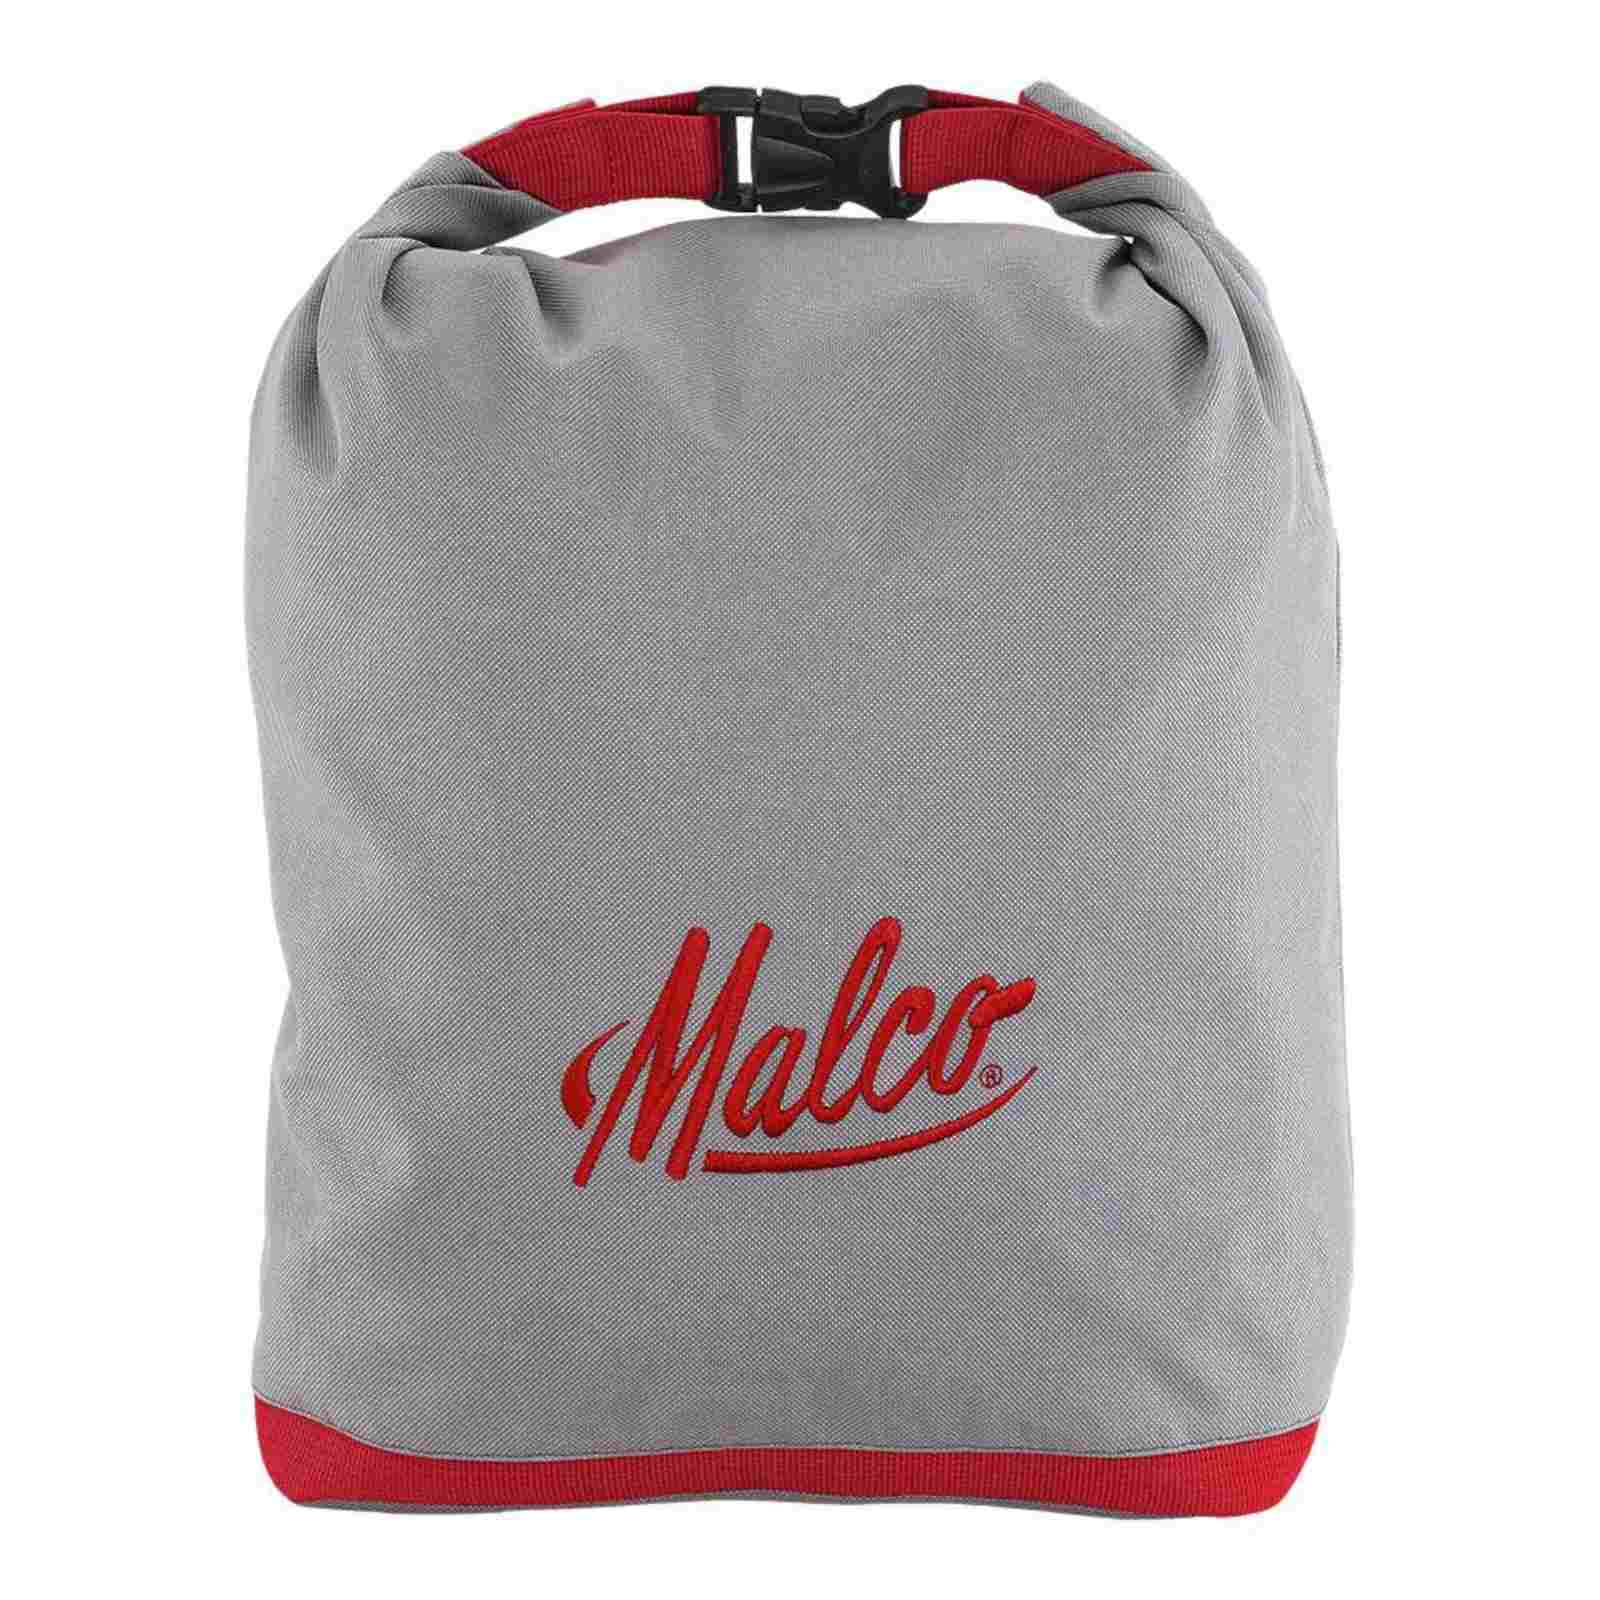 Malco Metal Bender Bag